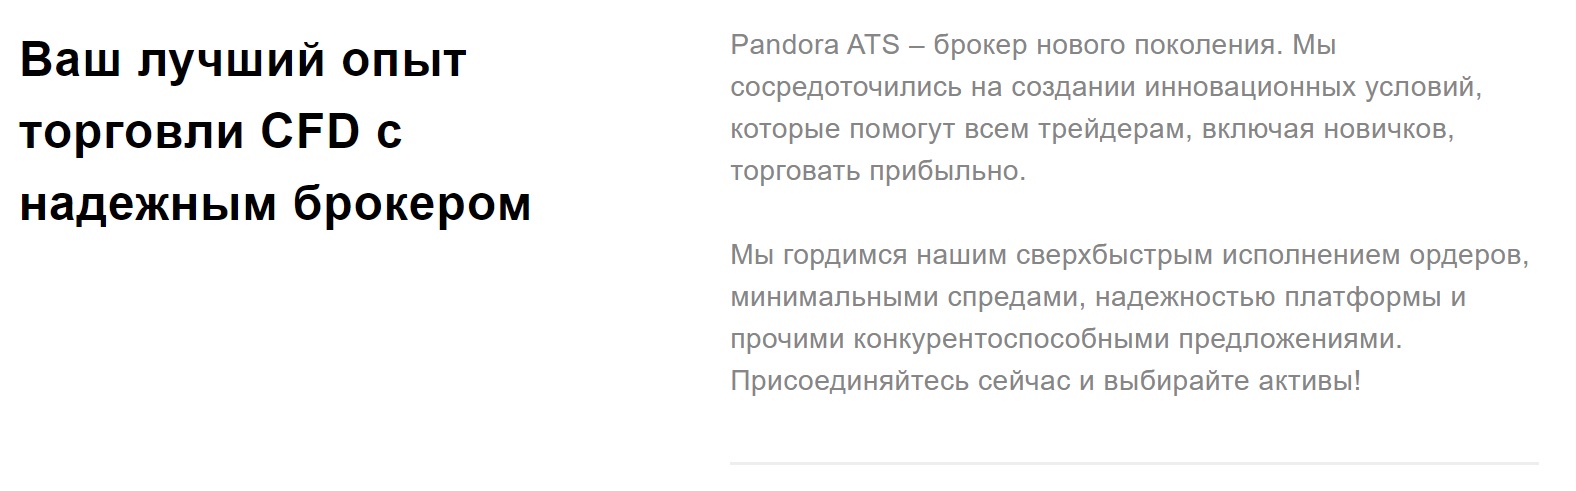 Описание Pandora Ats